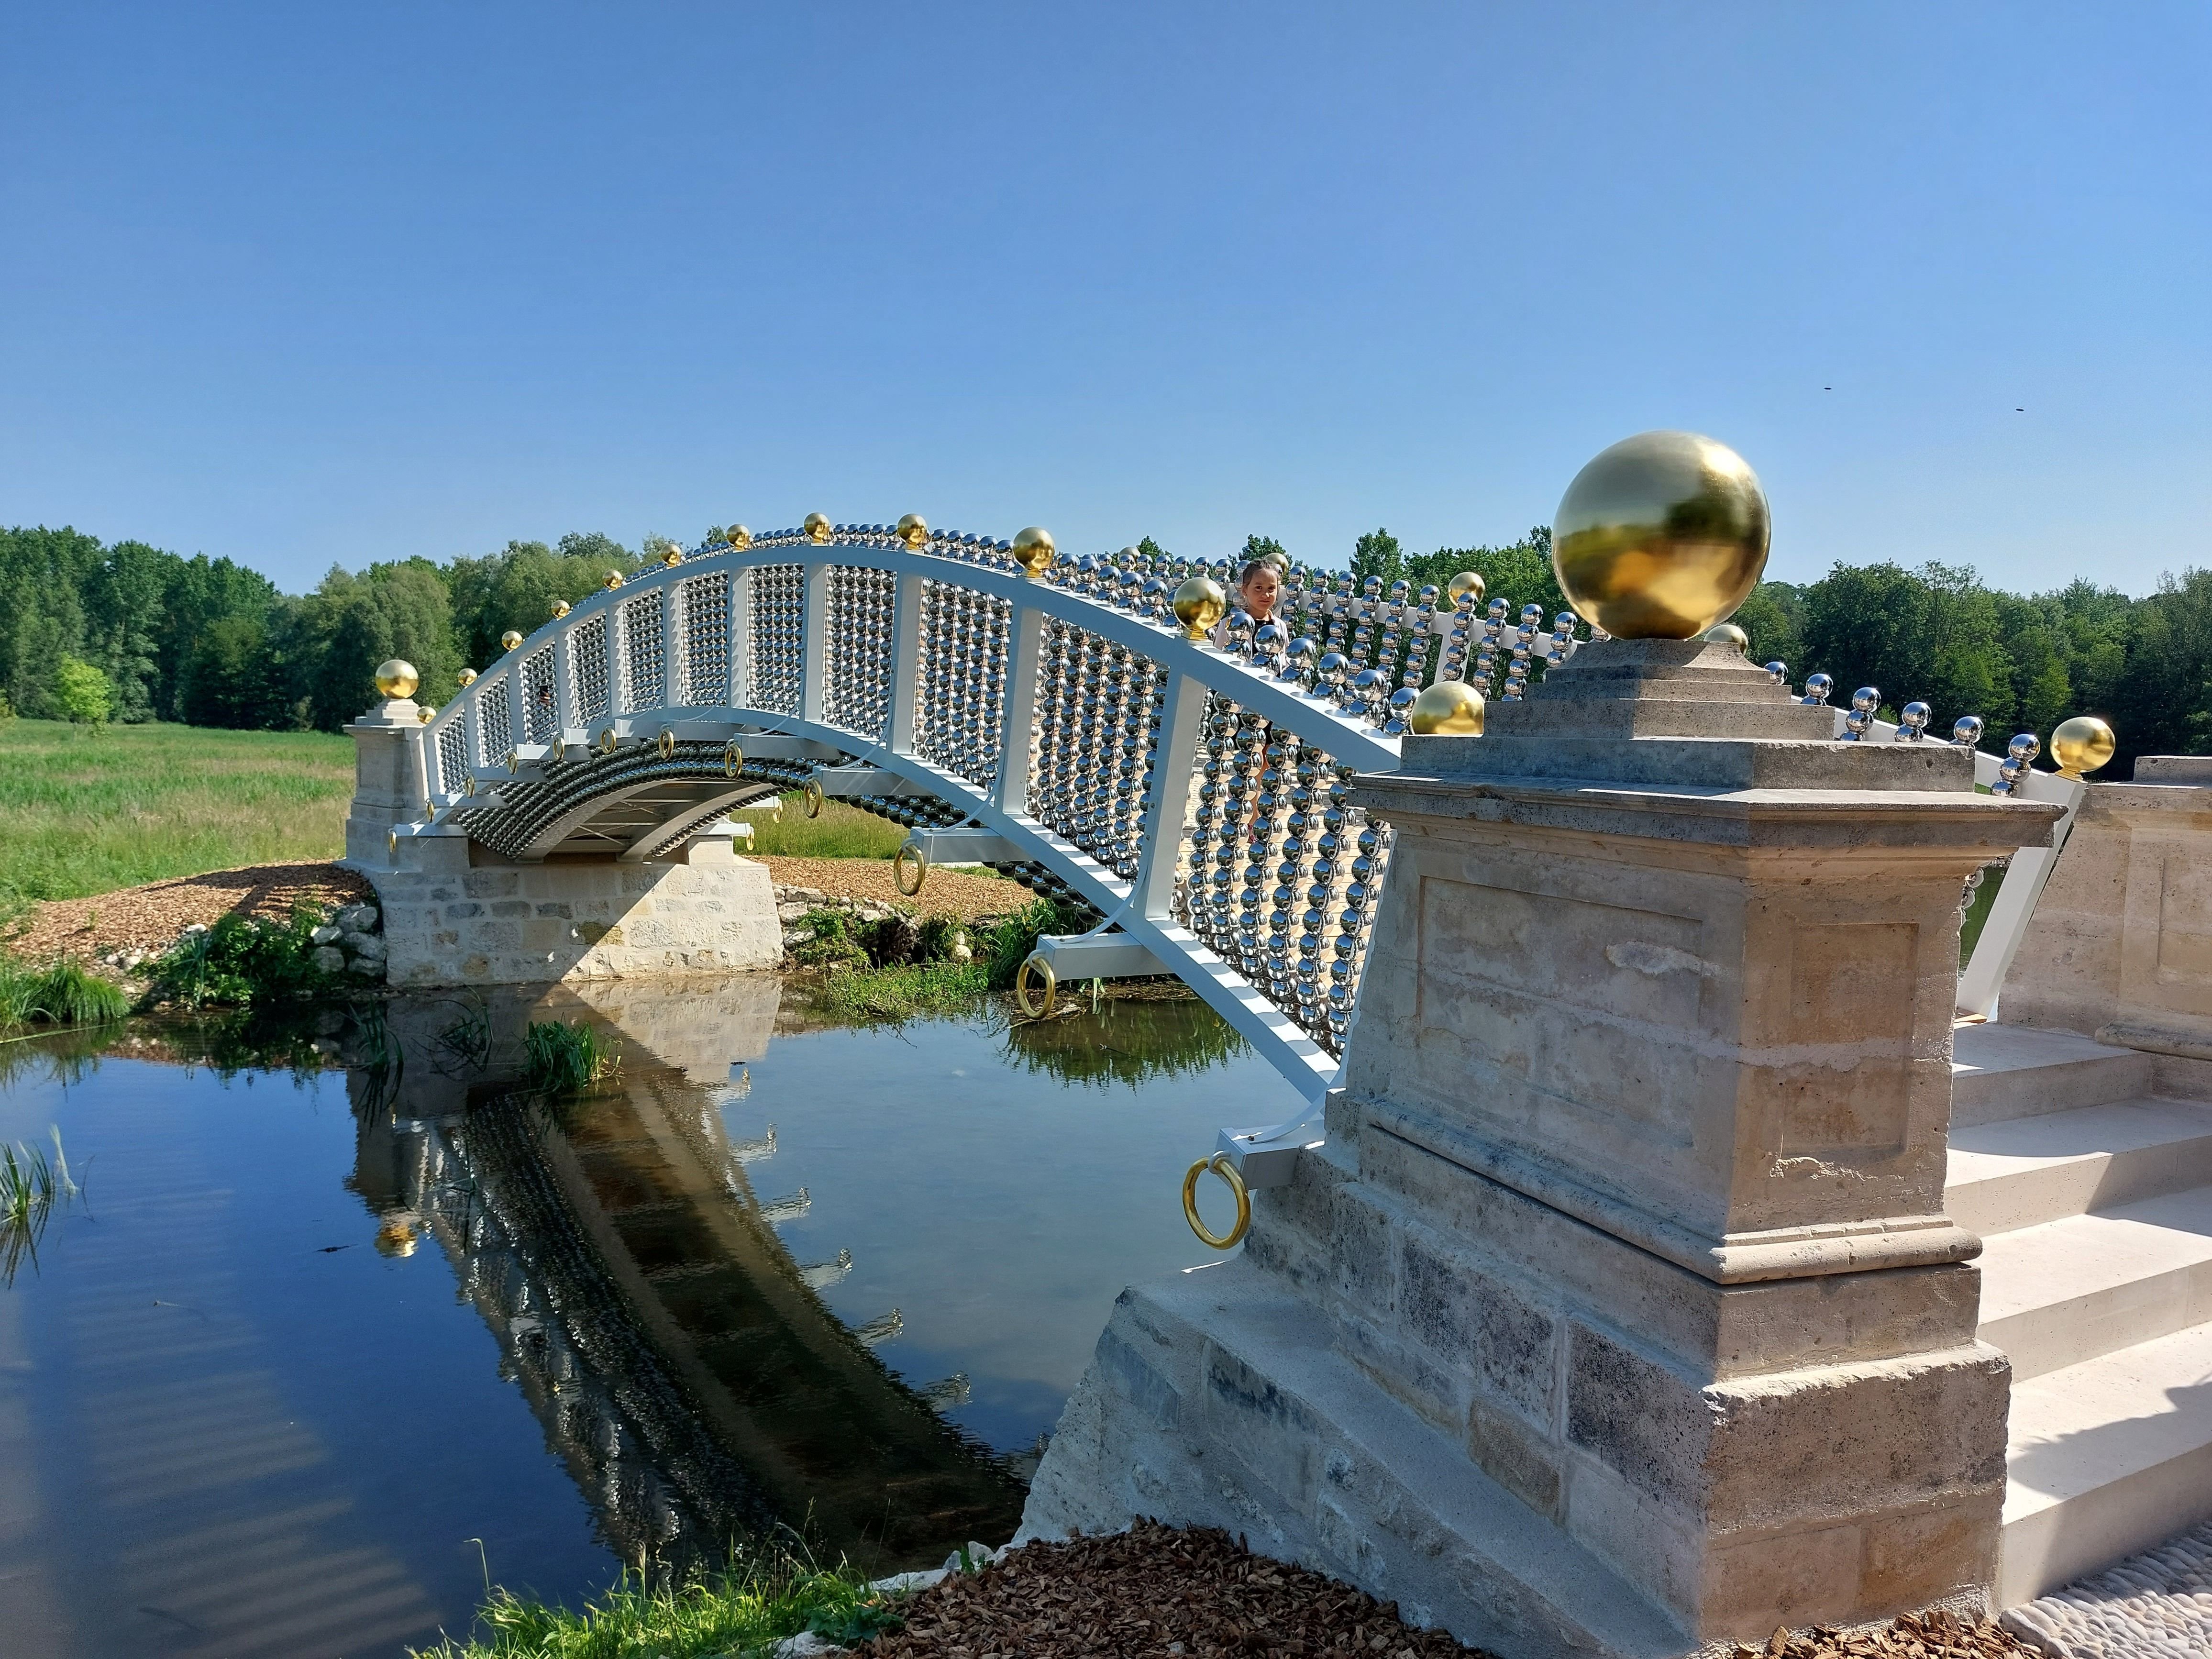 Le Mérévillois, le 3 juin 2023. Le Pont aux boules d'or, conçu par Jean-Michel Othoniel, a été inauguré ce samedi au domaine de Méréville. LP/Cécile Chevallier